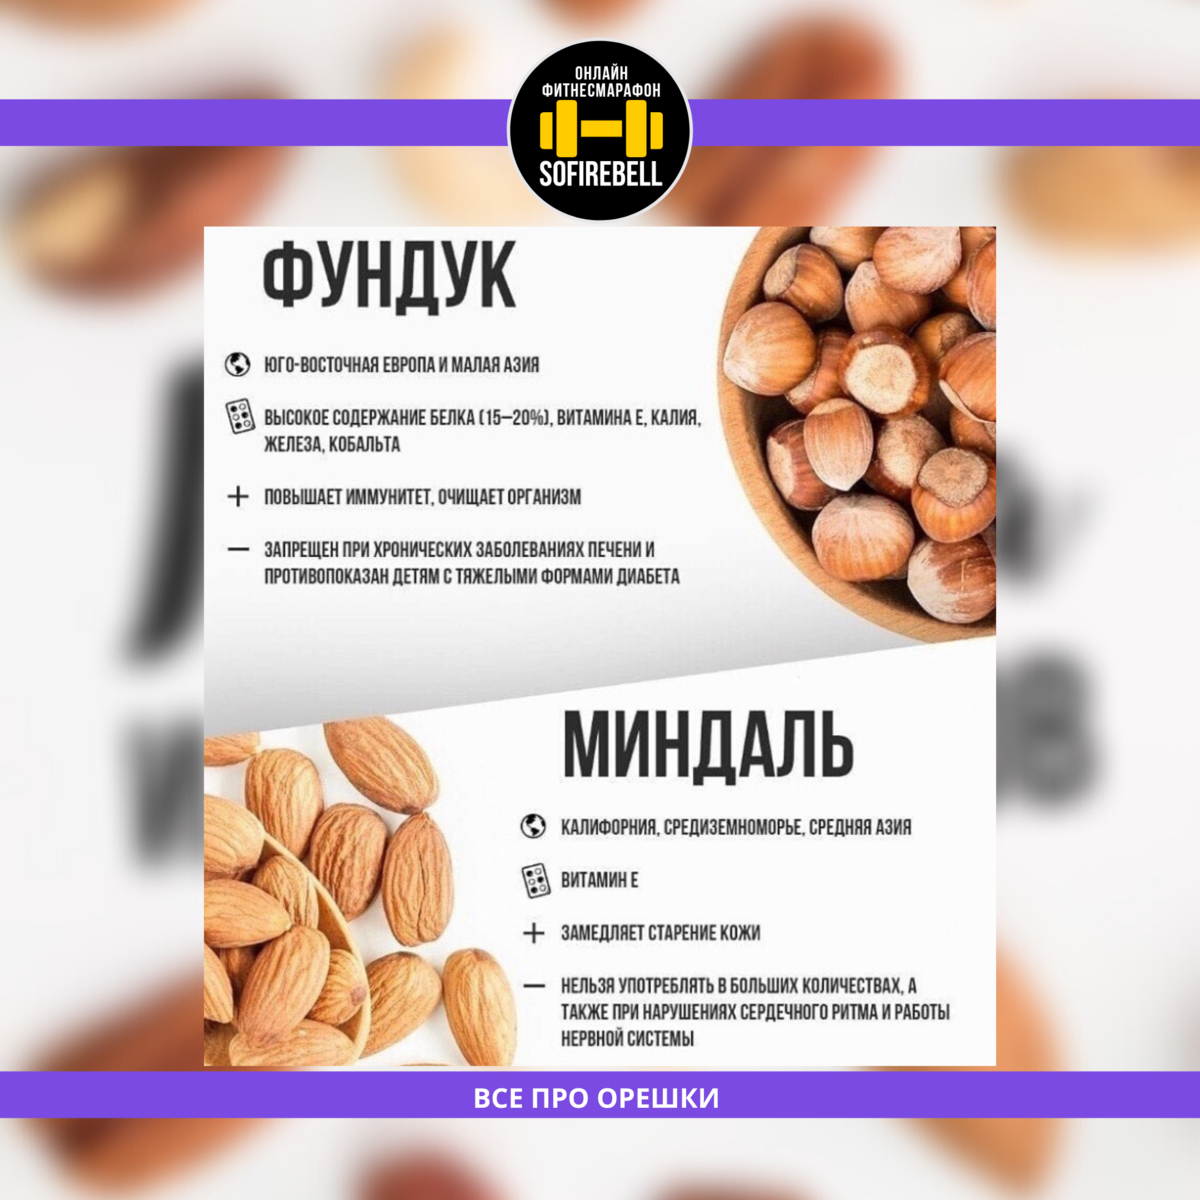 Польза и вред фундука: химический состав и калорийность ореха, значение для мужчин и женщин